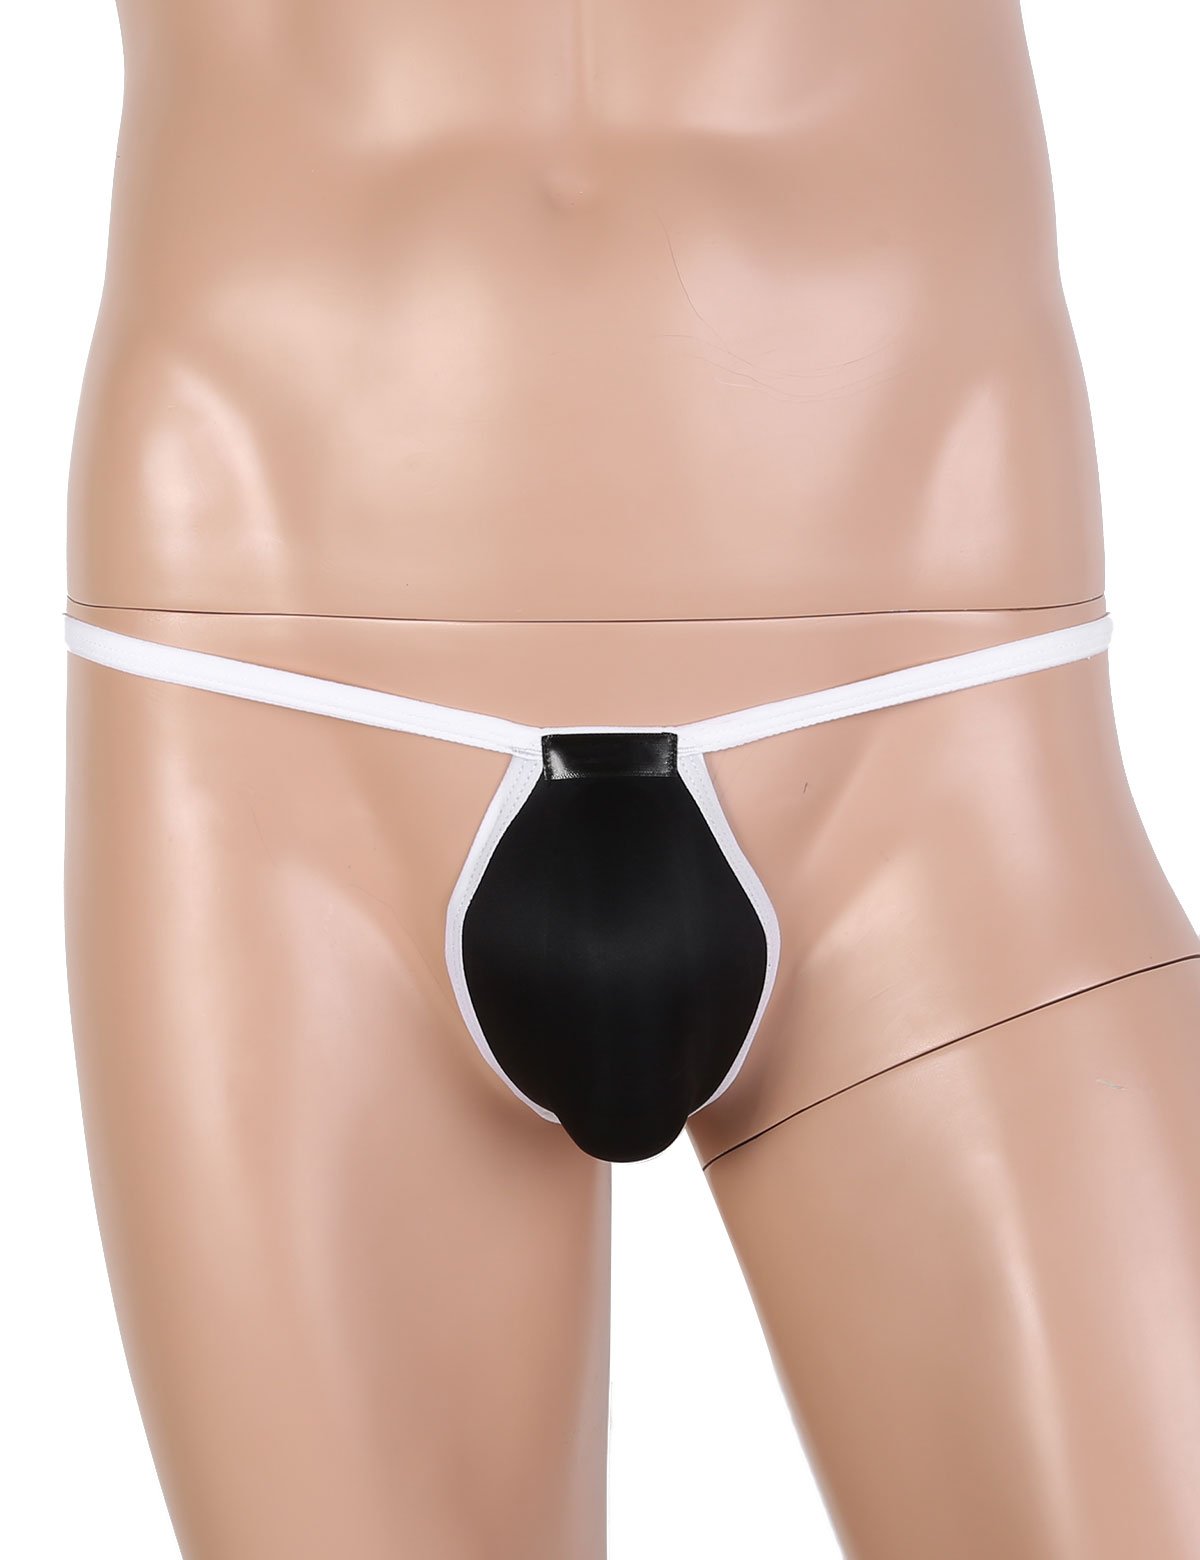 Bulge Pouch T-back Thong - Sissy Panty Shop